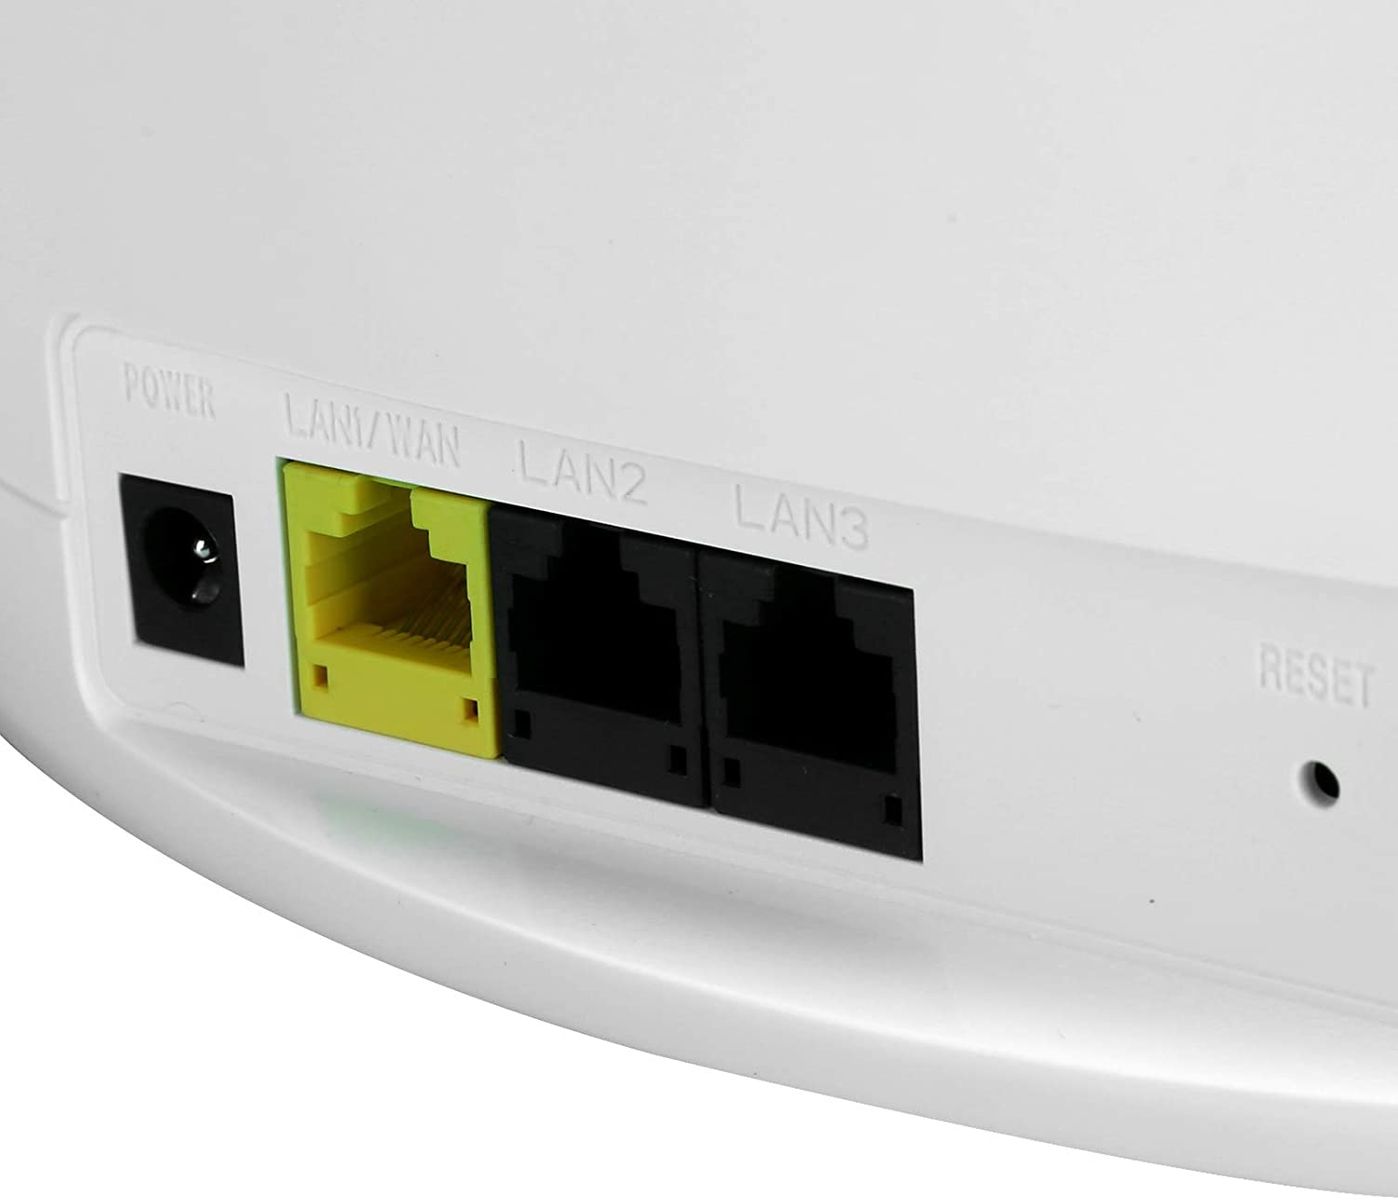 Zunate 4G Wireless Router 150 Mbit/s LTE WLAN Router 1WAN + 2LAN-Port unterstützt SIM-Karte Breite Wi-Fi Abdeckung Offiece/Home